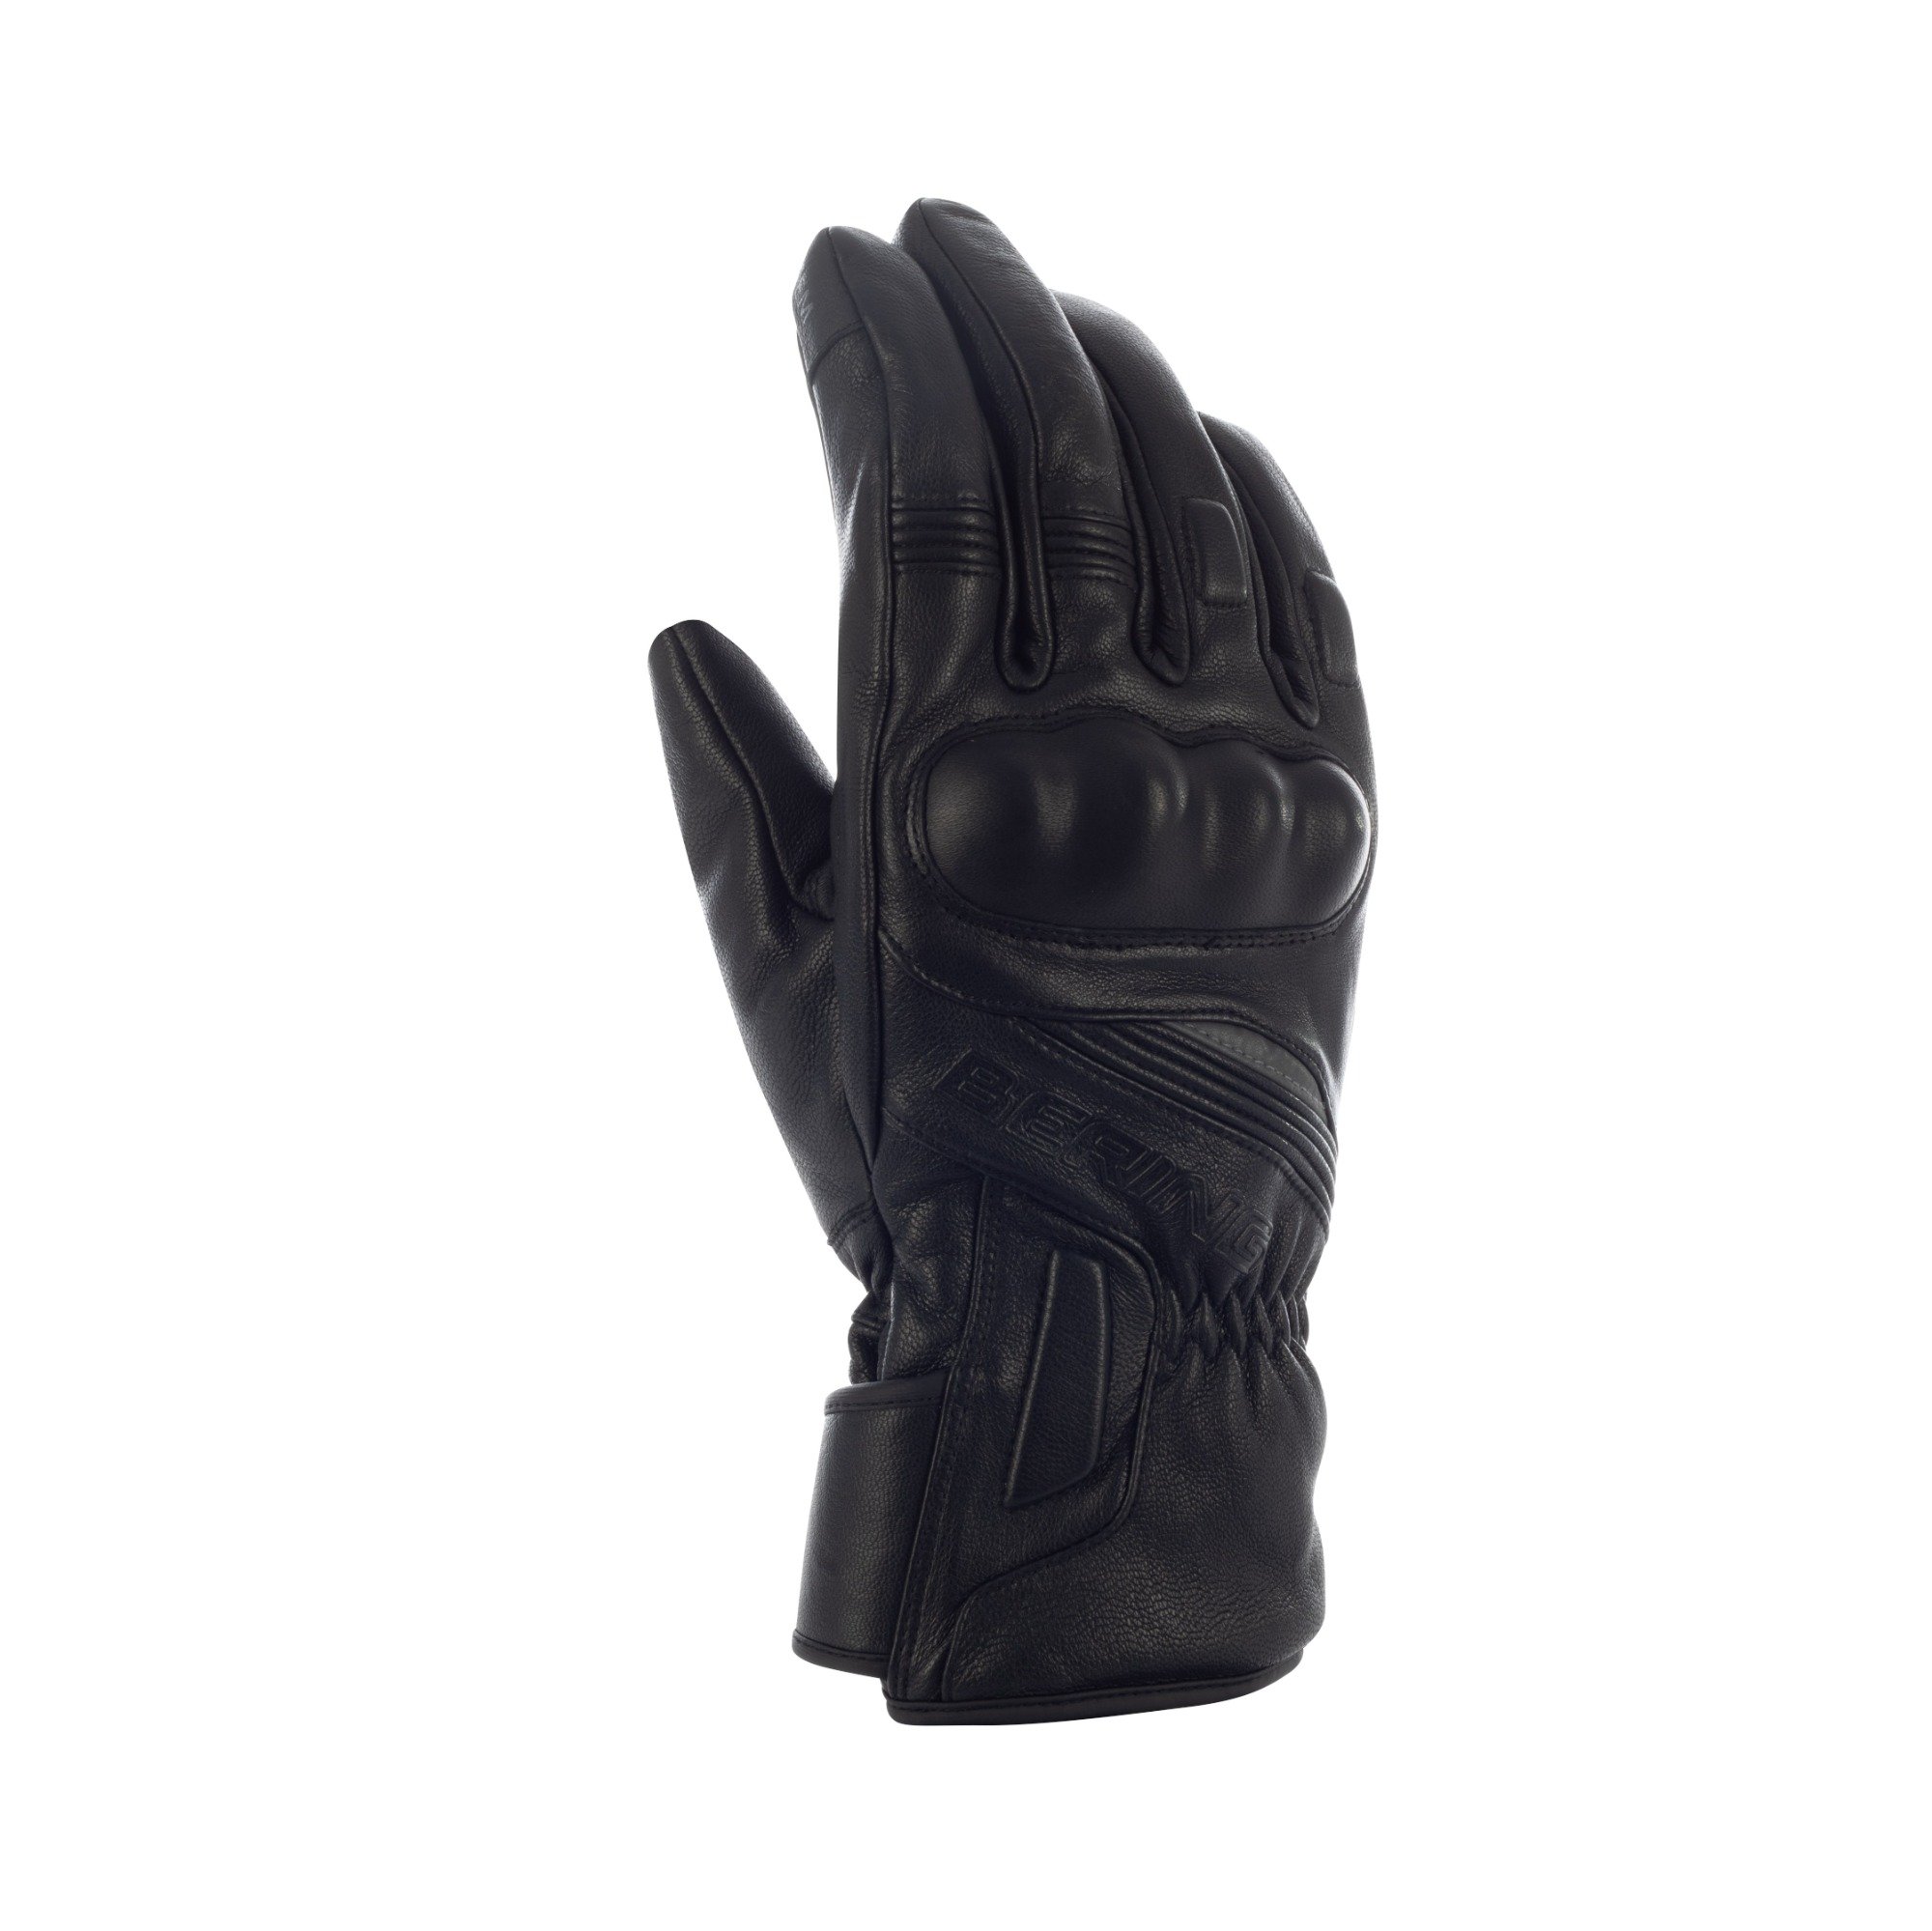 Image of Bering Stryker Gloves Black Size T9 EN